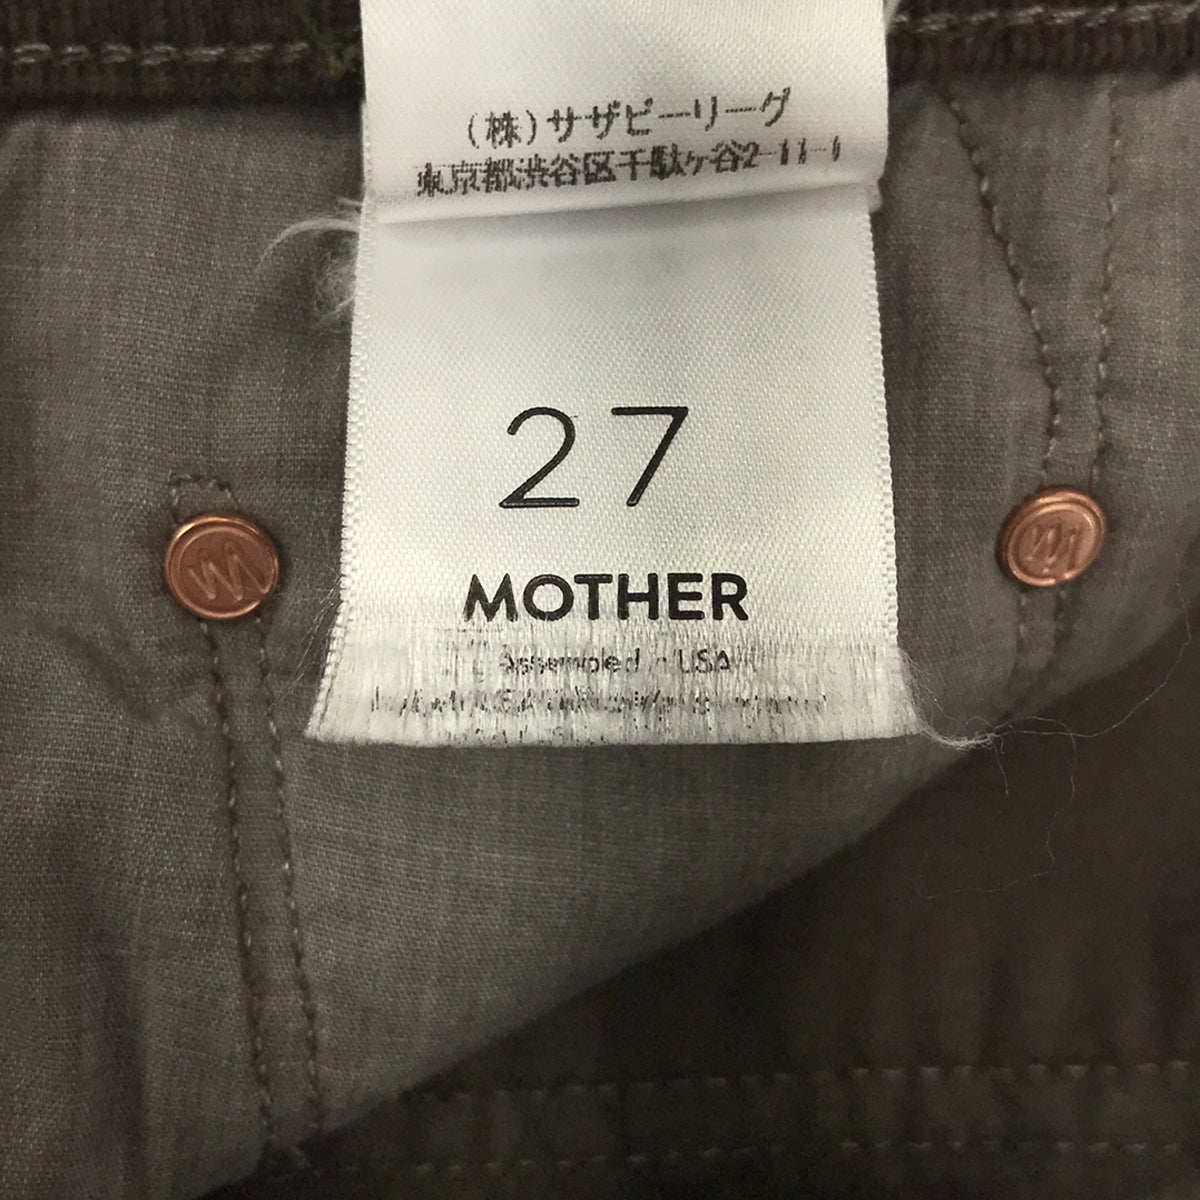 MOTHER / マザー | コーデュロイパンツ | 27 | レディース